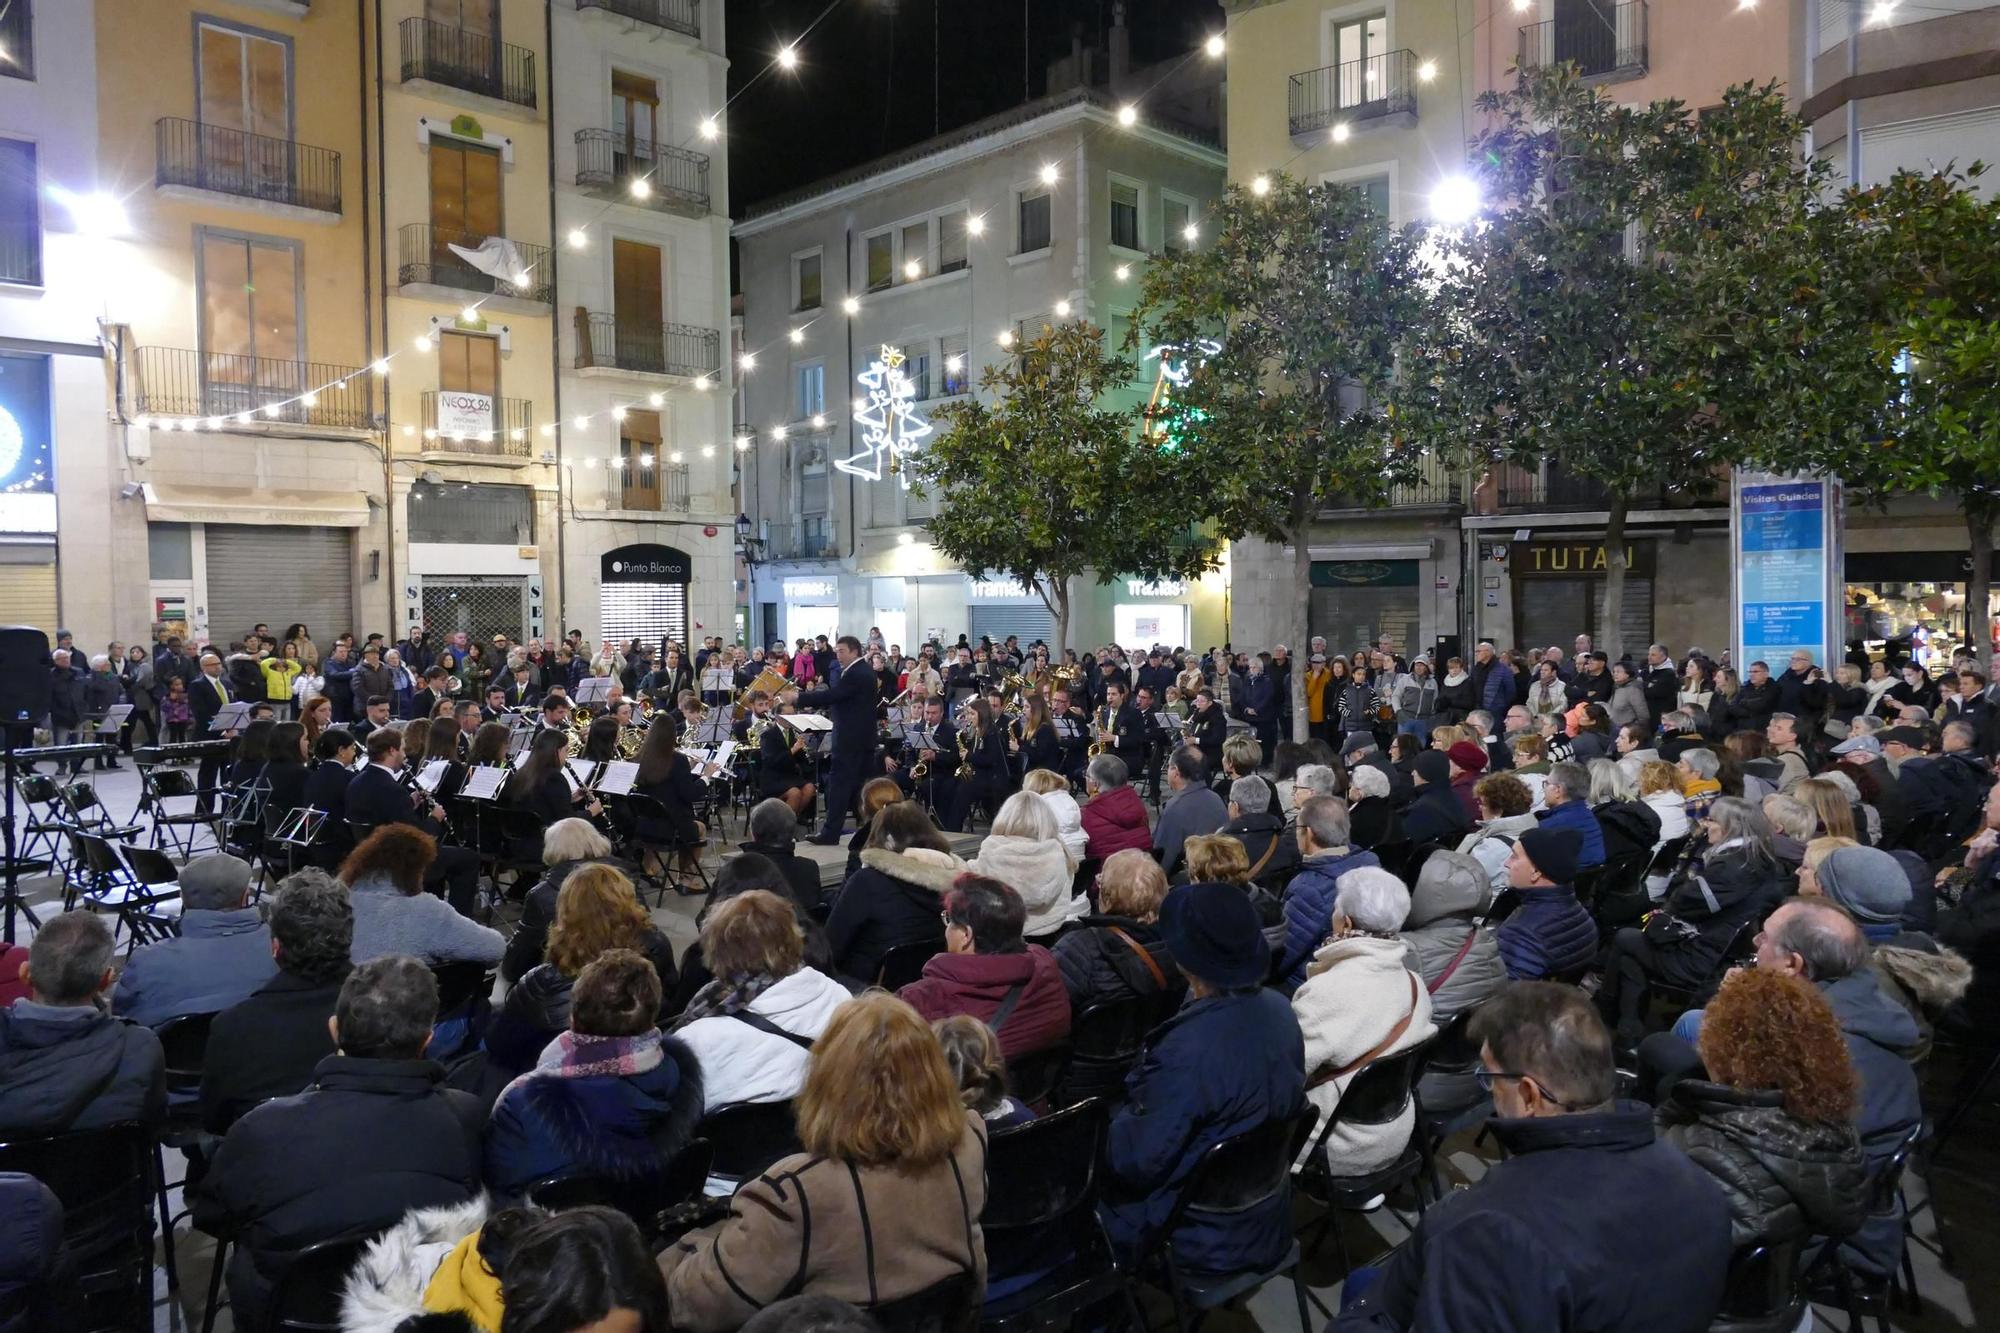 Una setantena de músics omplen la plaça de l'Ajuntament de Figueres